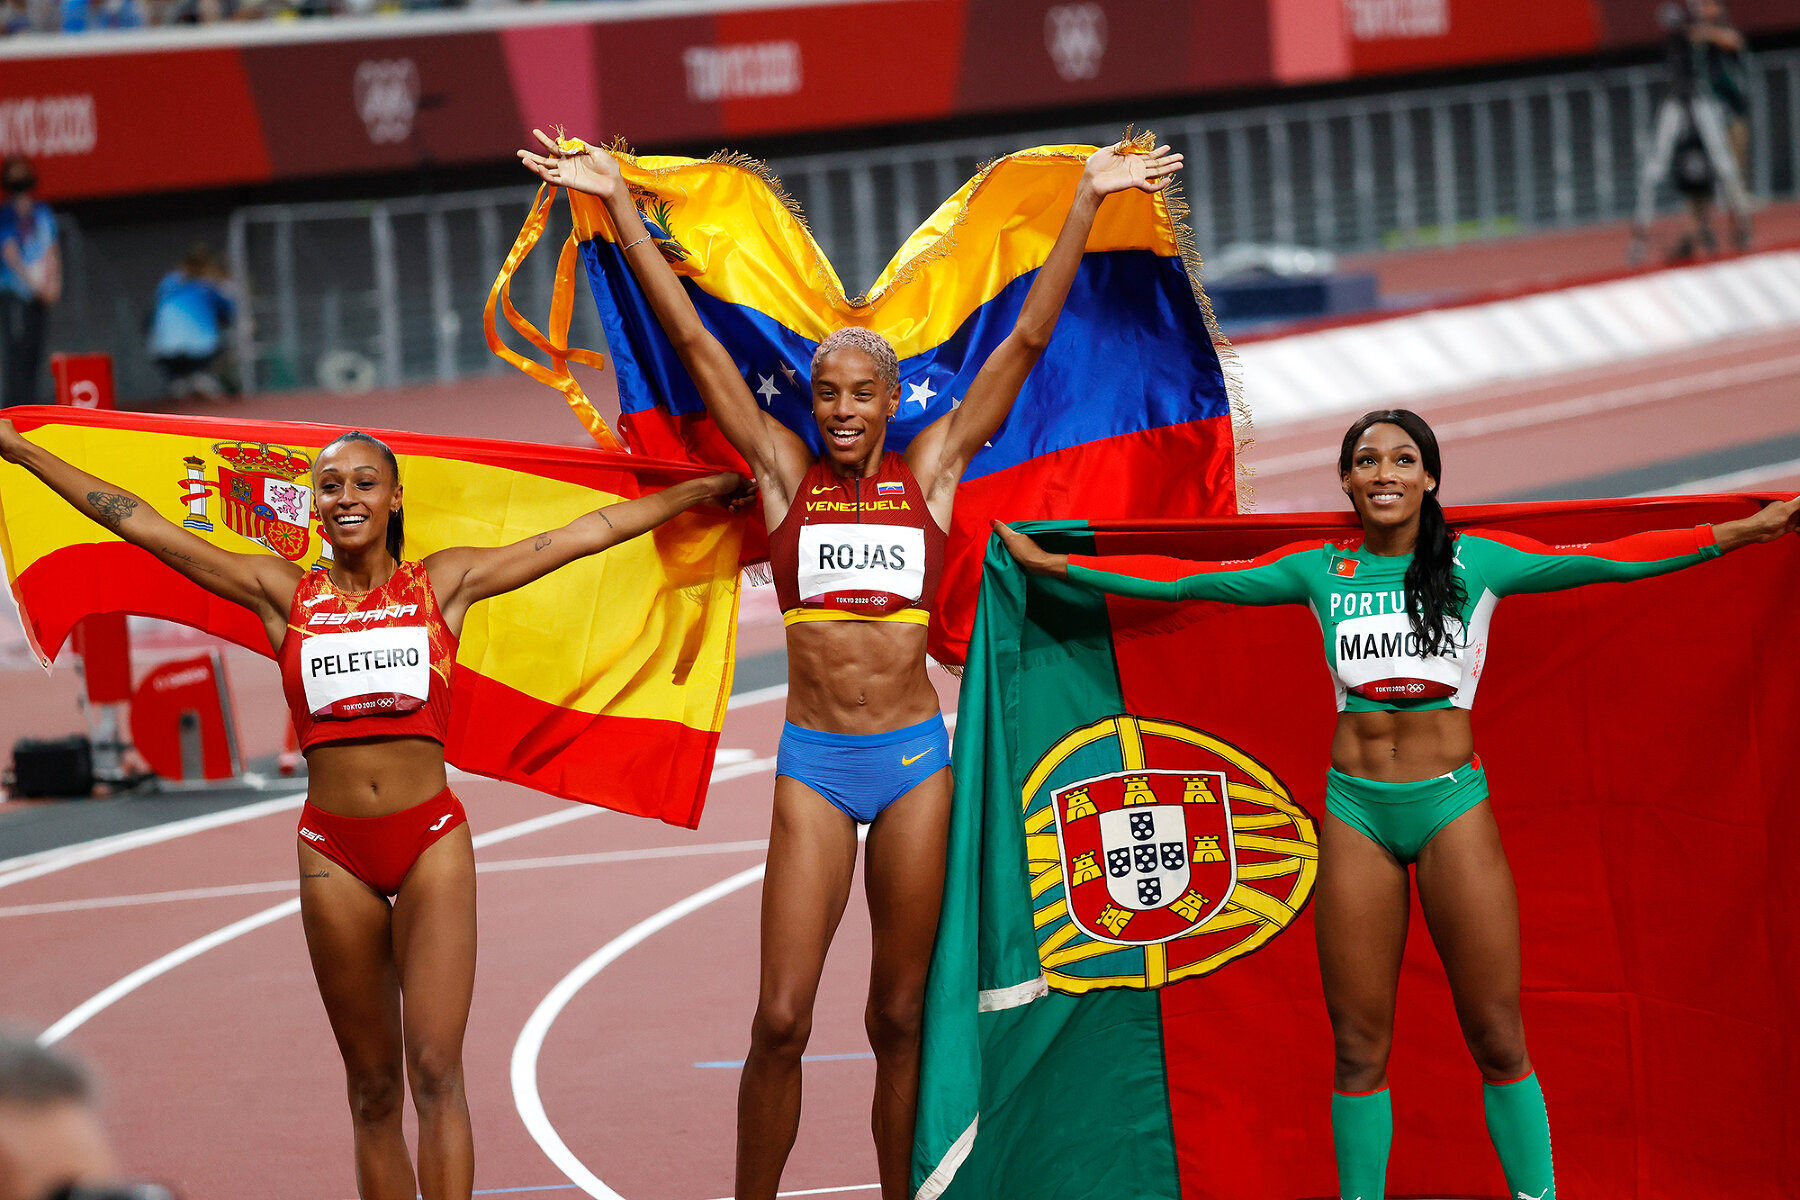 <p>Ана Пелетейро из Испании (бронза),&nbsp;Юлимар Рохас из Венесуэлы (золото) и&nbsp;Патрисия Мамона из Португалии (серебро)&nbsp;празднуют взятие пьедестала в тройном прыжке, 1 августа 2021 года</p>